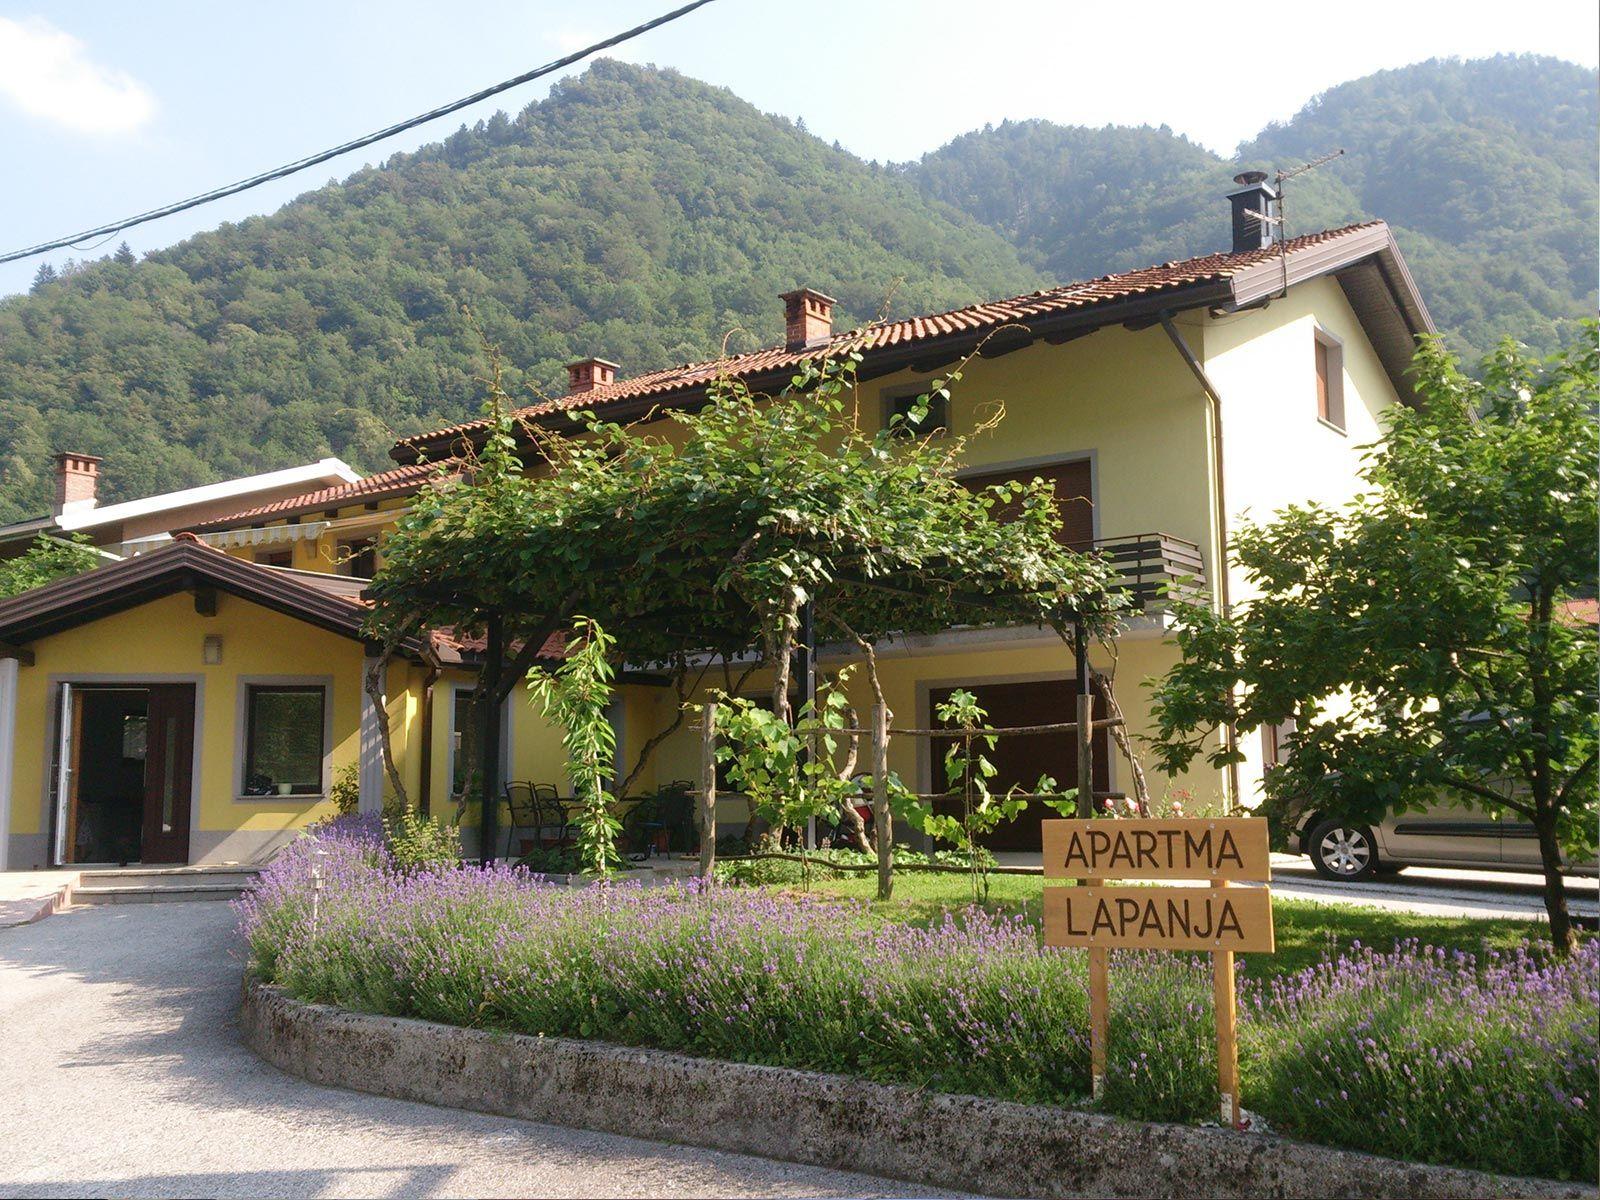 Ferienwohnung für 7 Personen ca. 138 m²  Ferienhaus in Slowenien